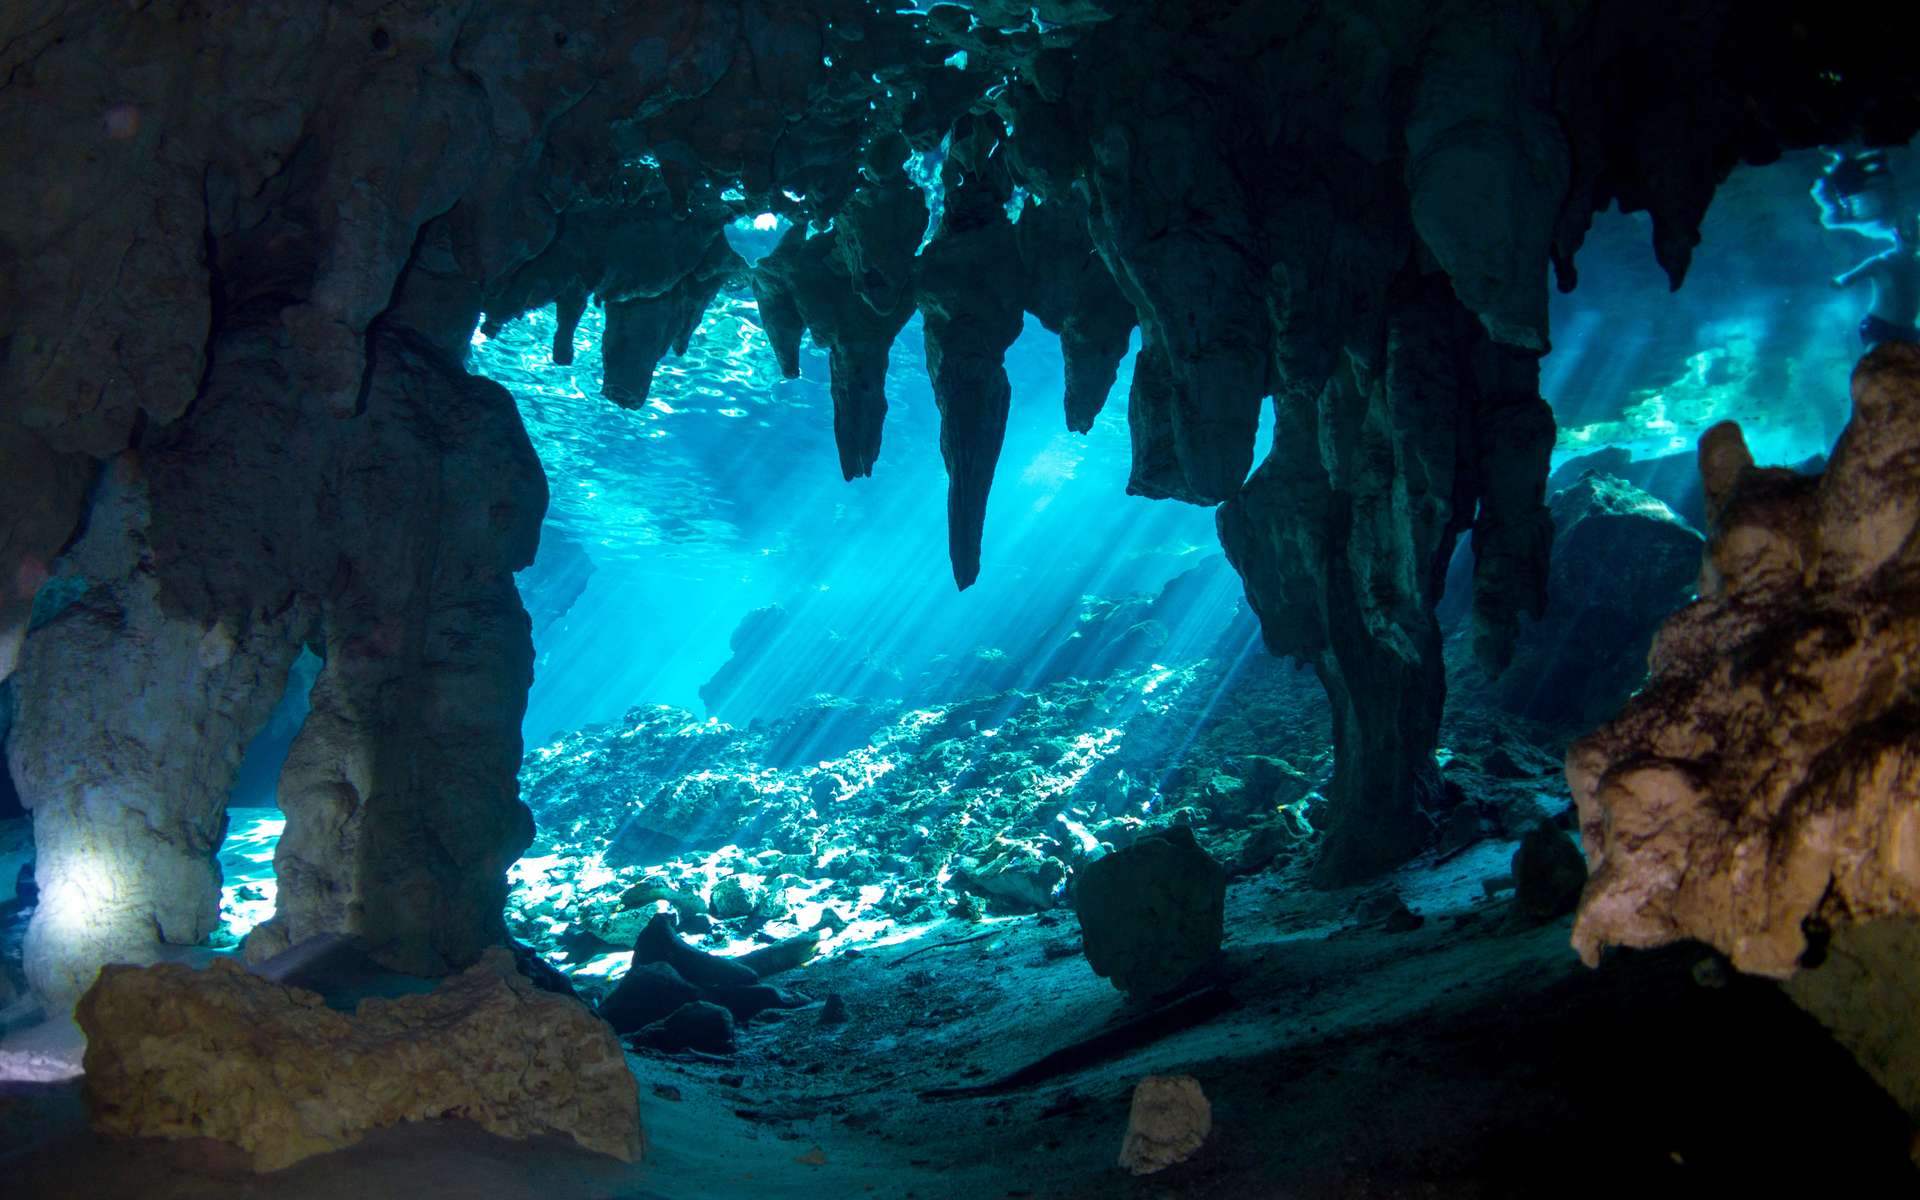 Les concrétions des grottes inondées aident à caractériser les variations du niveau marin sur les derniers millénaires © Sabrina, Adobe Stock